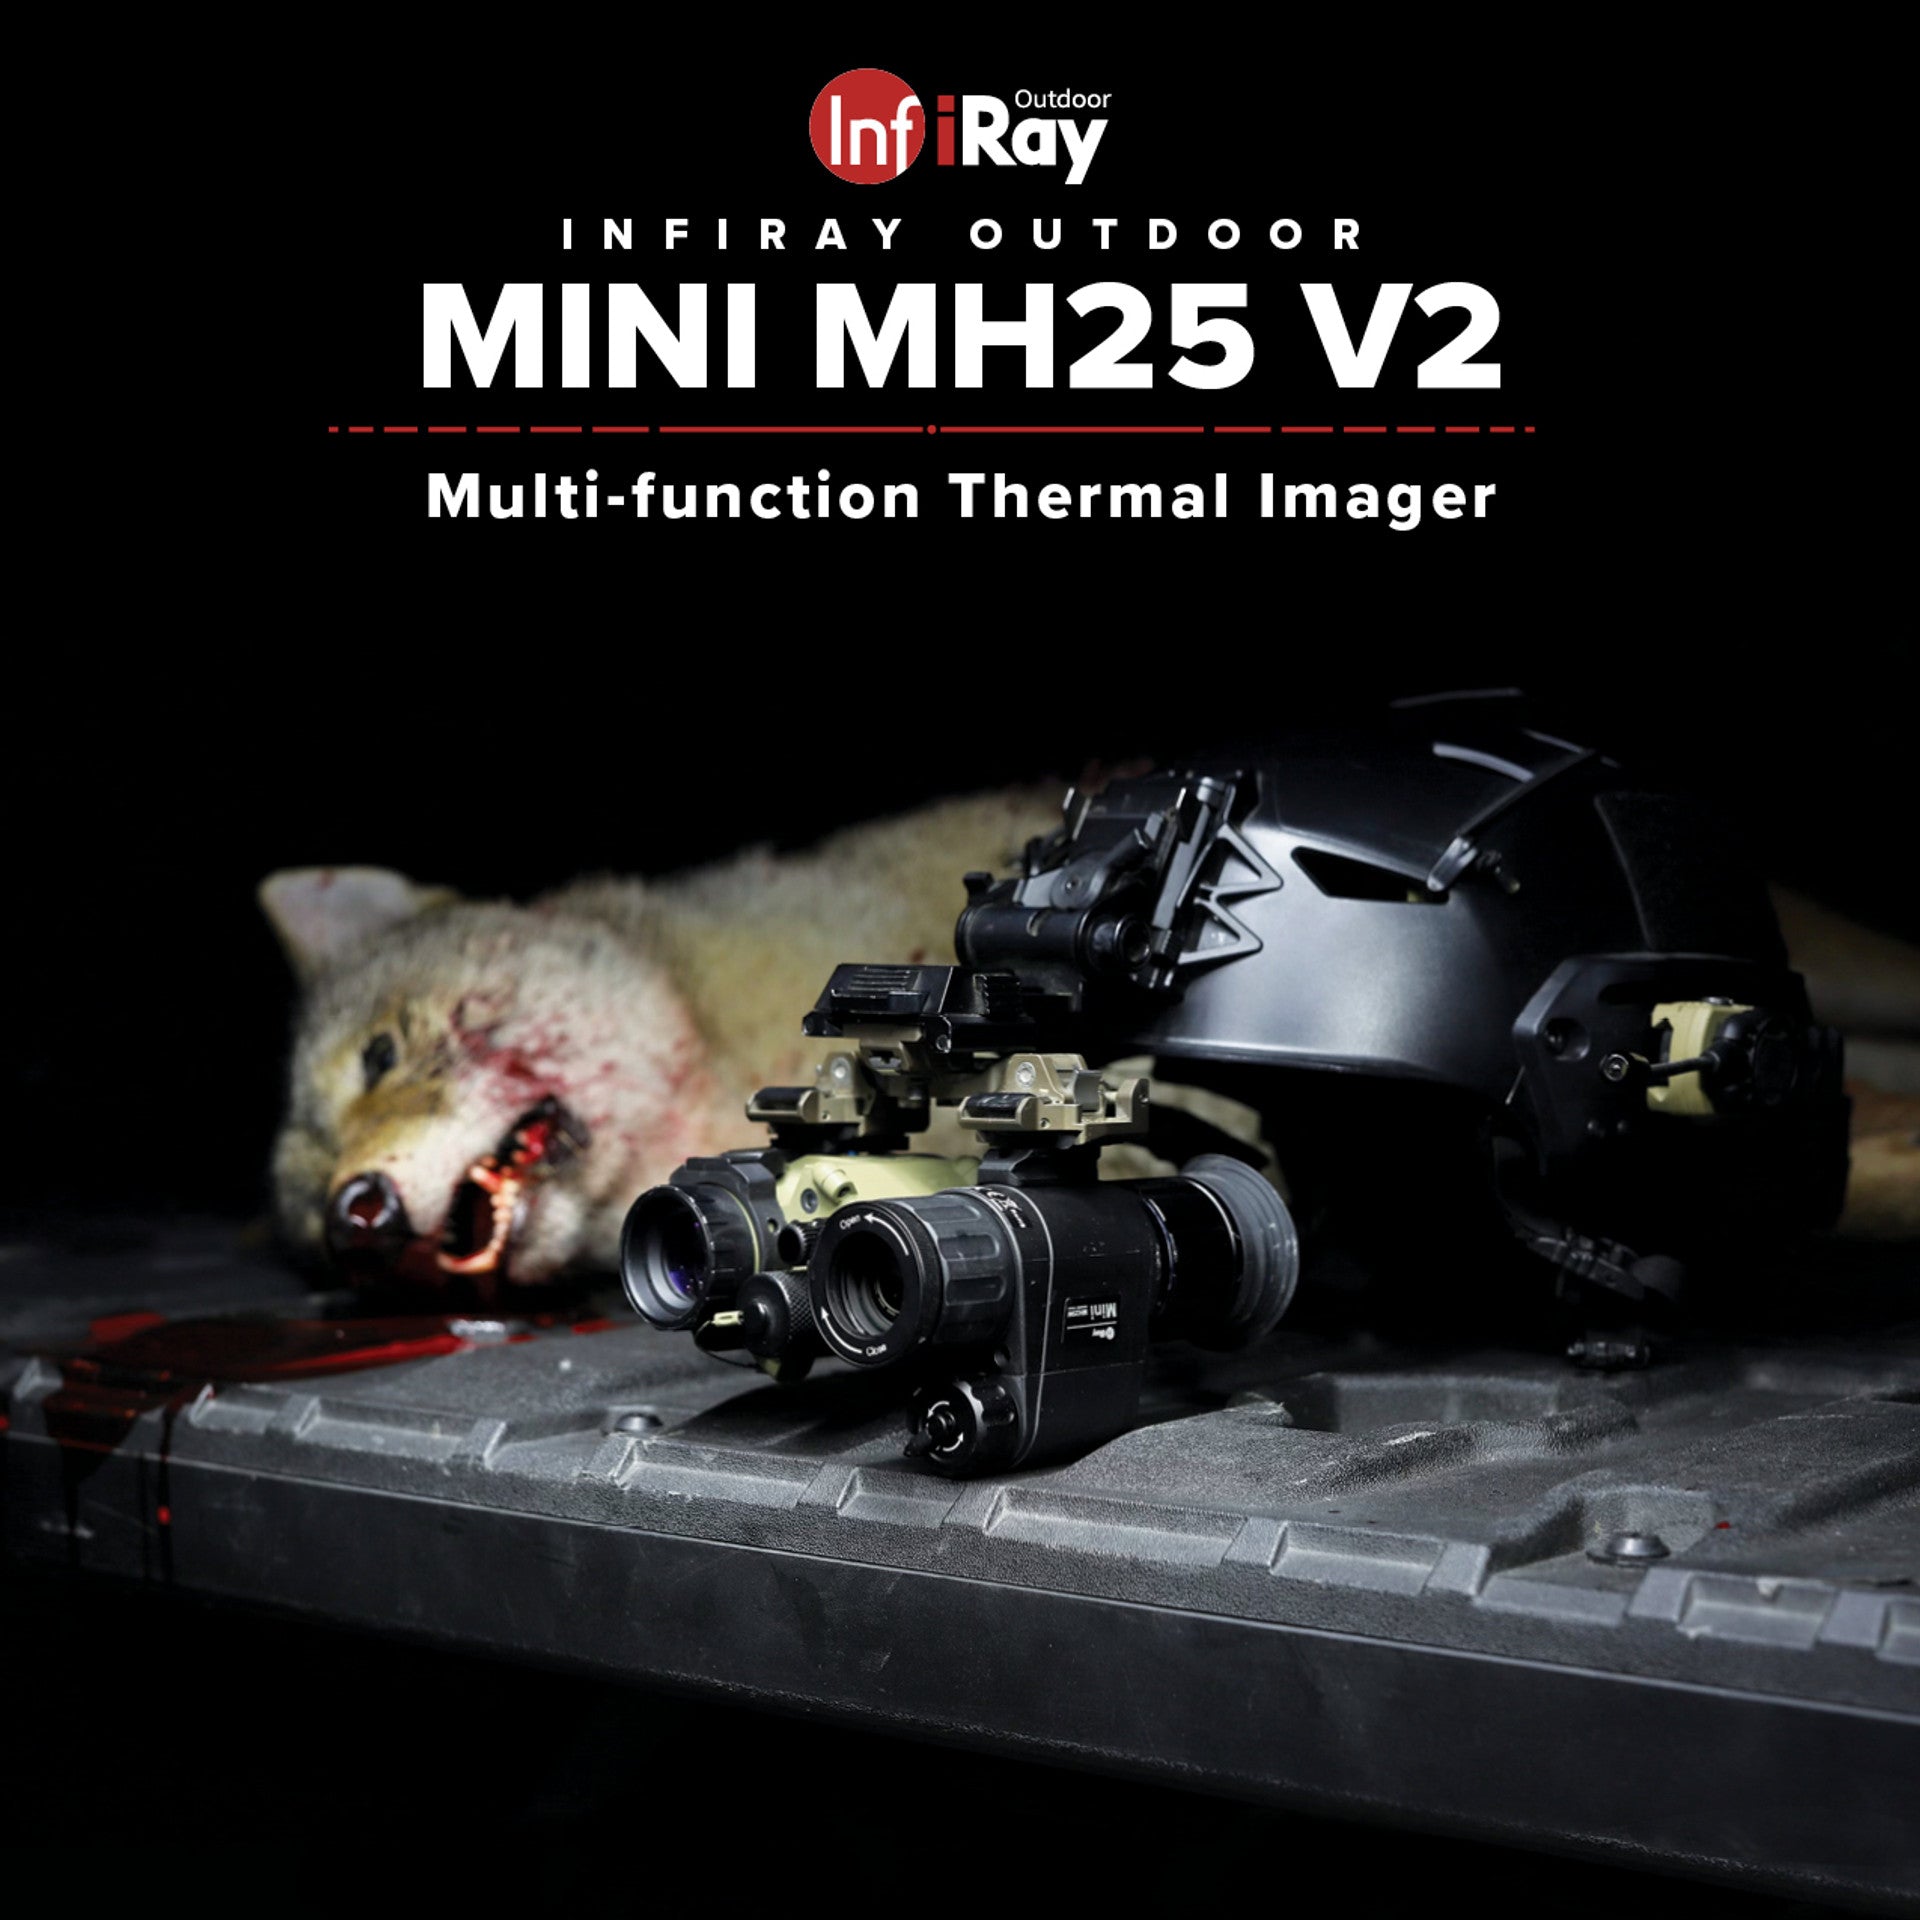 infiRay Outdoor iRay MINI MH25 V2 640